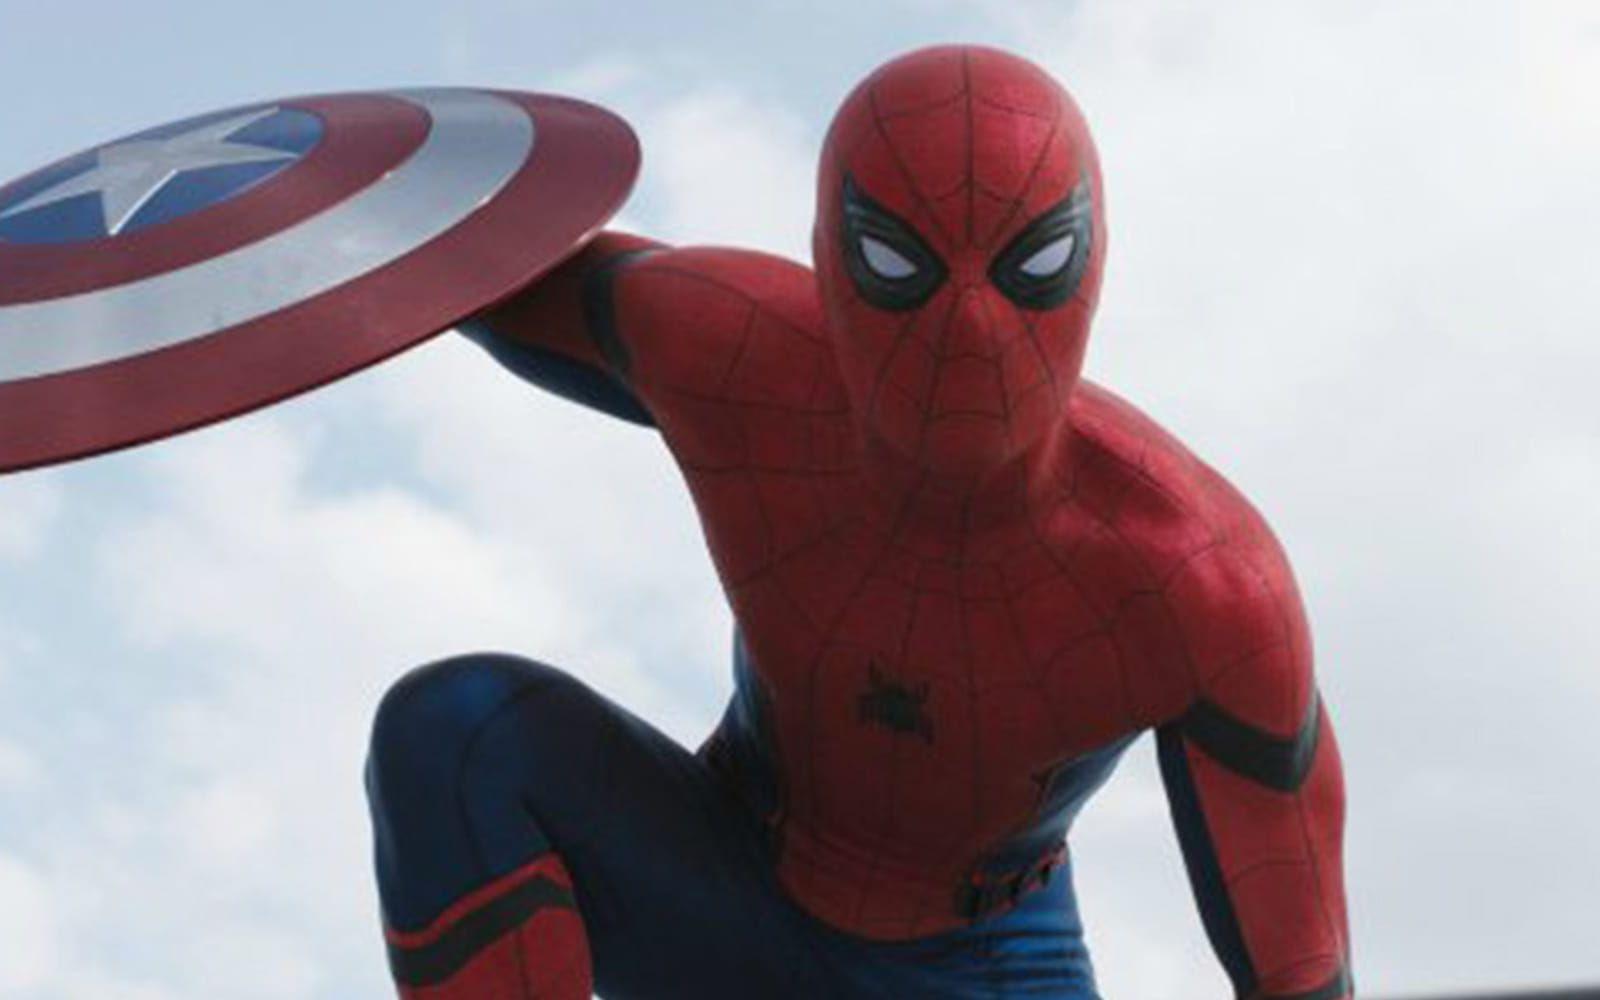 <strong>Spider-Man: Homecoming.</strong> Berättelsen om den unge Peter Parker och hans sätt att hantera sina nyvunna krafter fortsätter. Vi hoppas att ryktet om att nätkastarens ärkefiende Vulture ska dyka upp stämmer (7 juli). Förväntningar: 3/5.